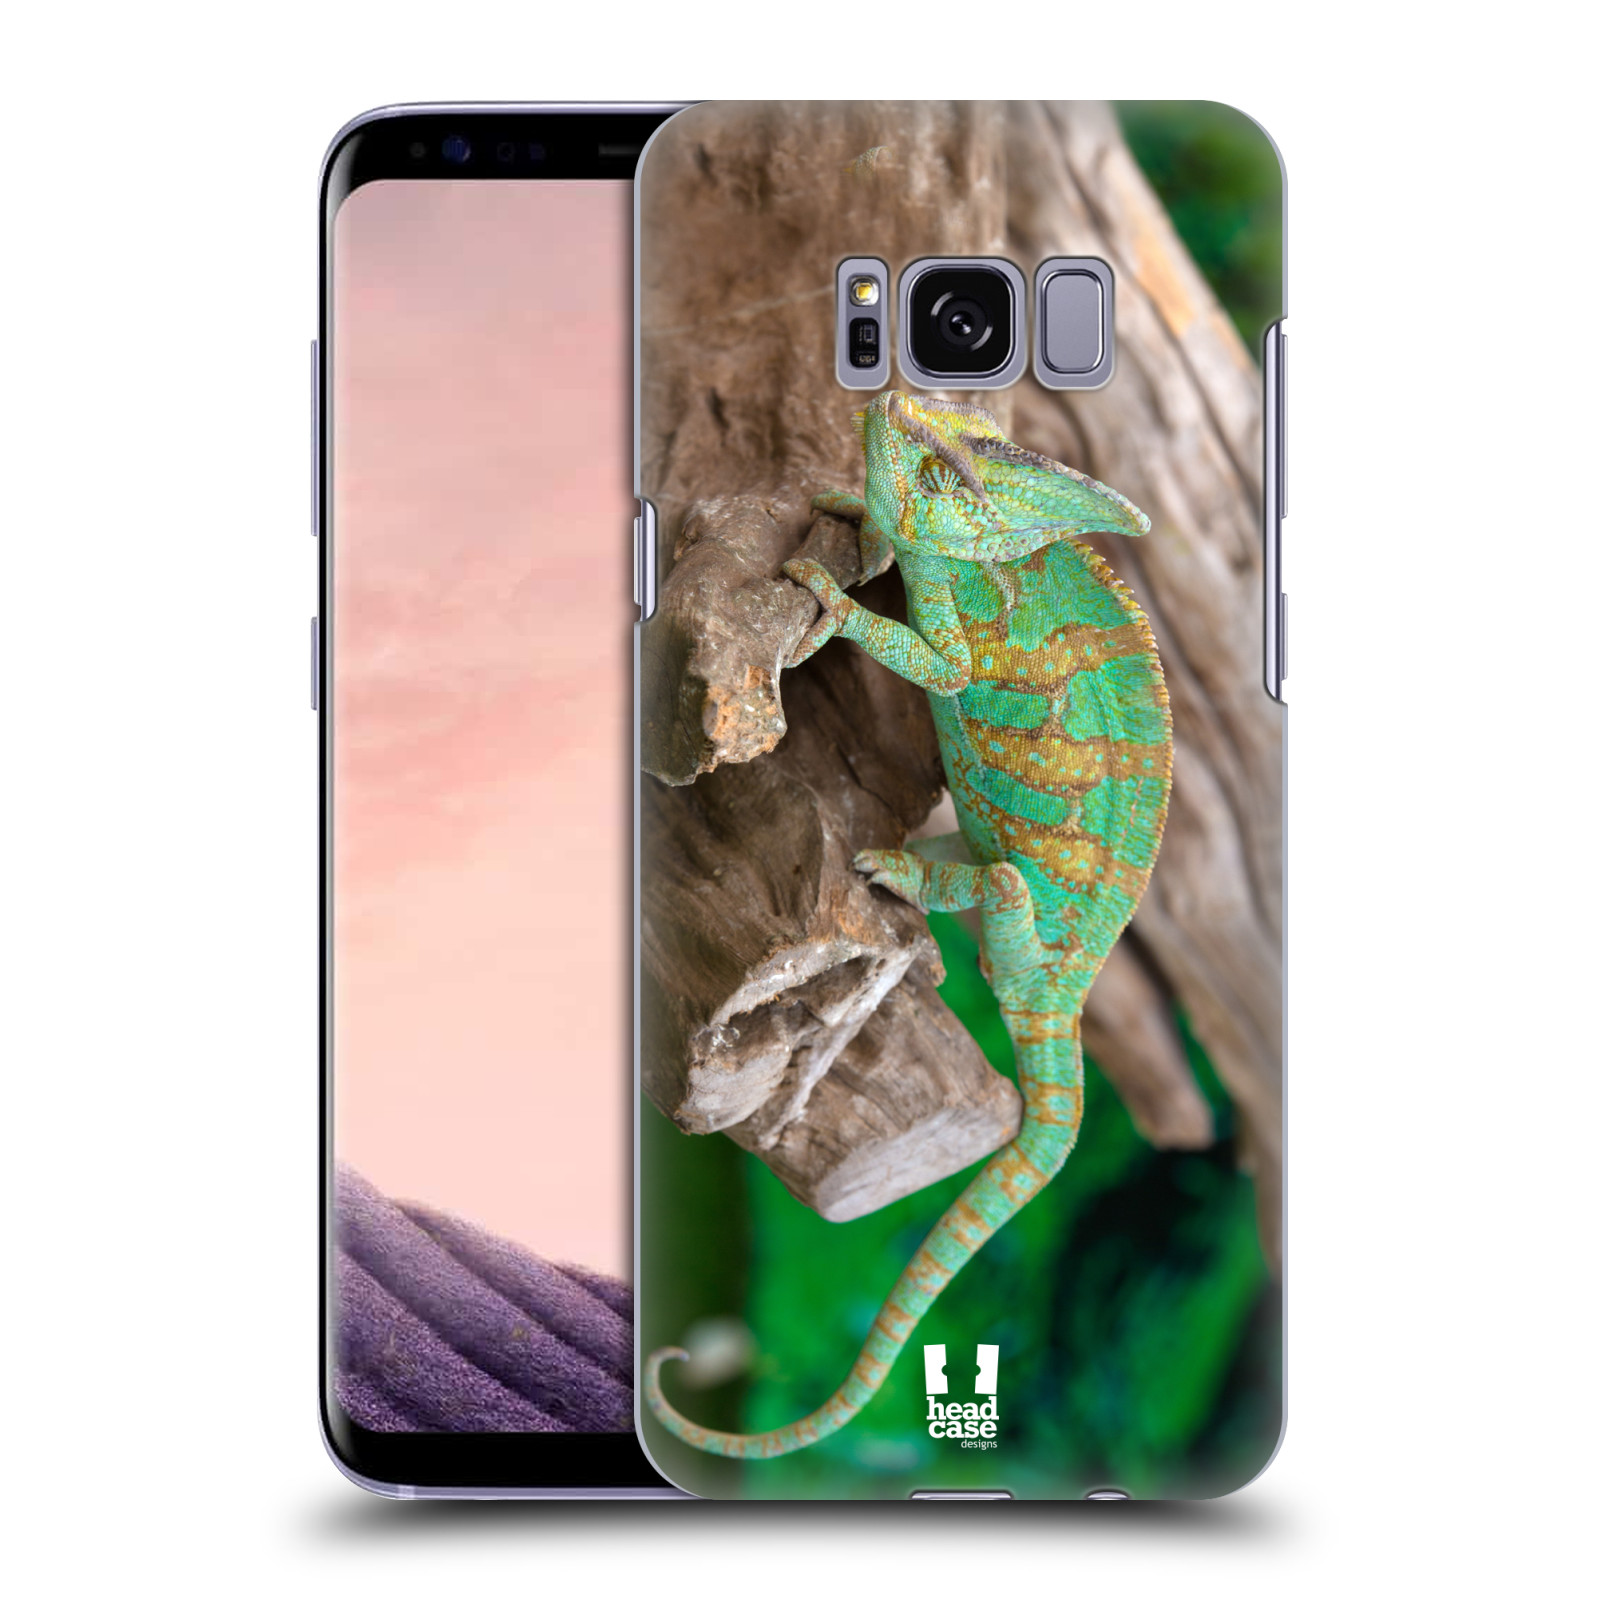 HEAD CASE plastový obal na mobil Samsung Galaxy S8 vzor slavná zvířata foto chameleon